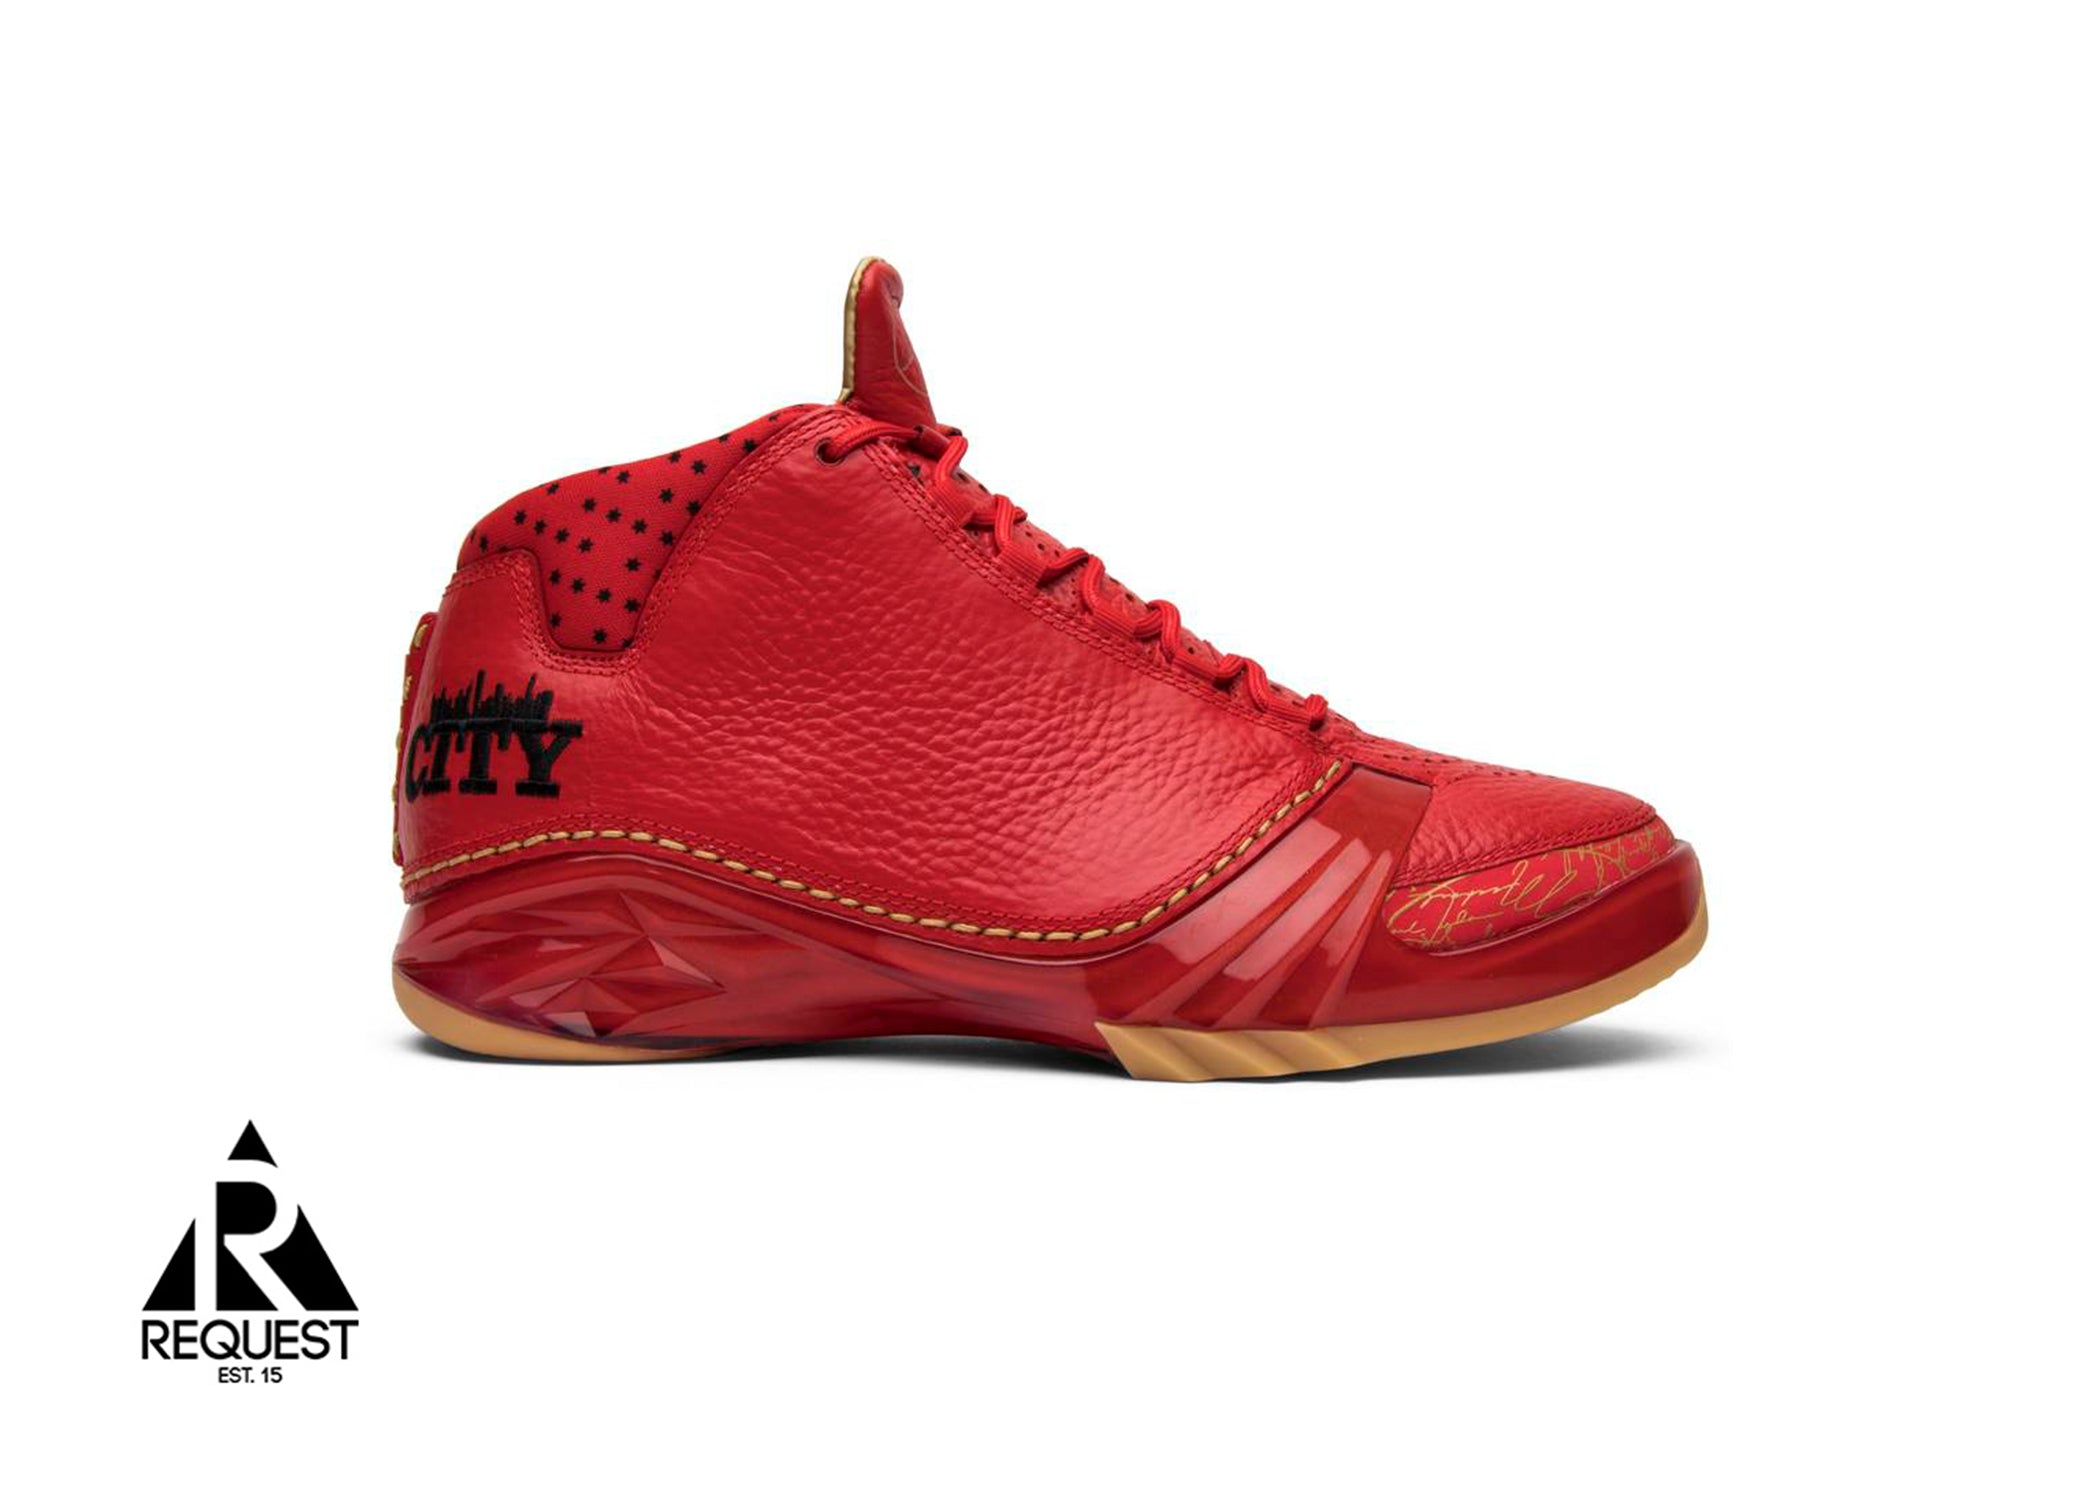 Air Jordan 23 “Chicago Bulls”